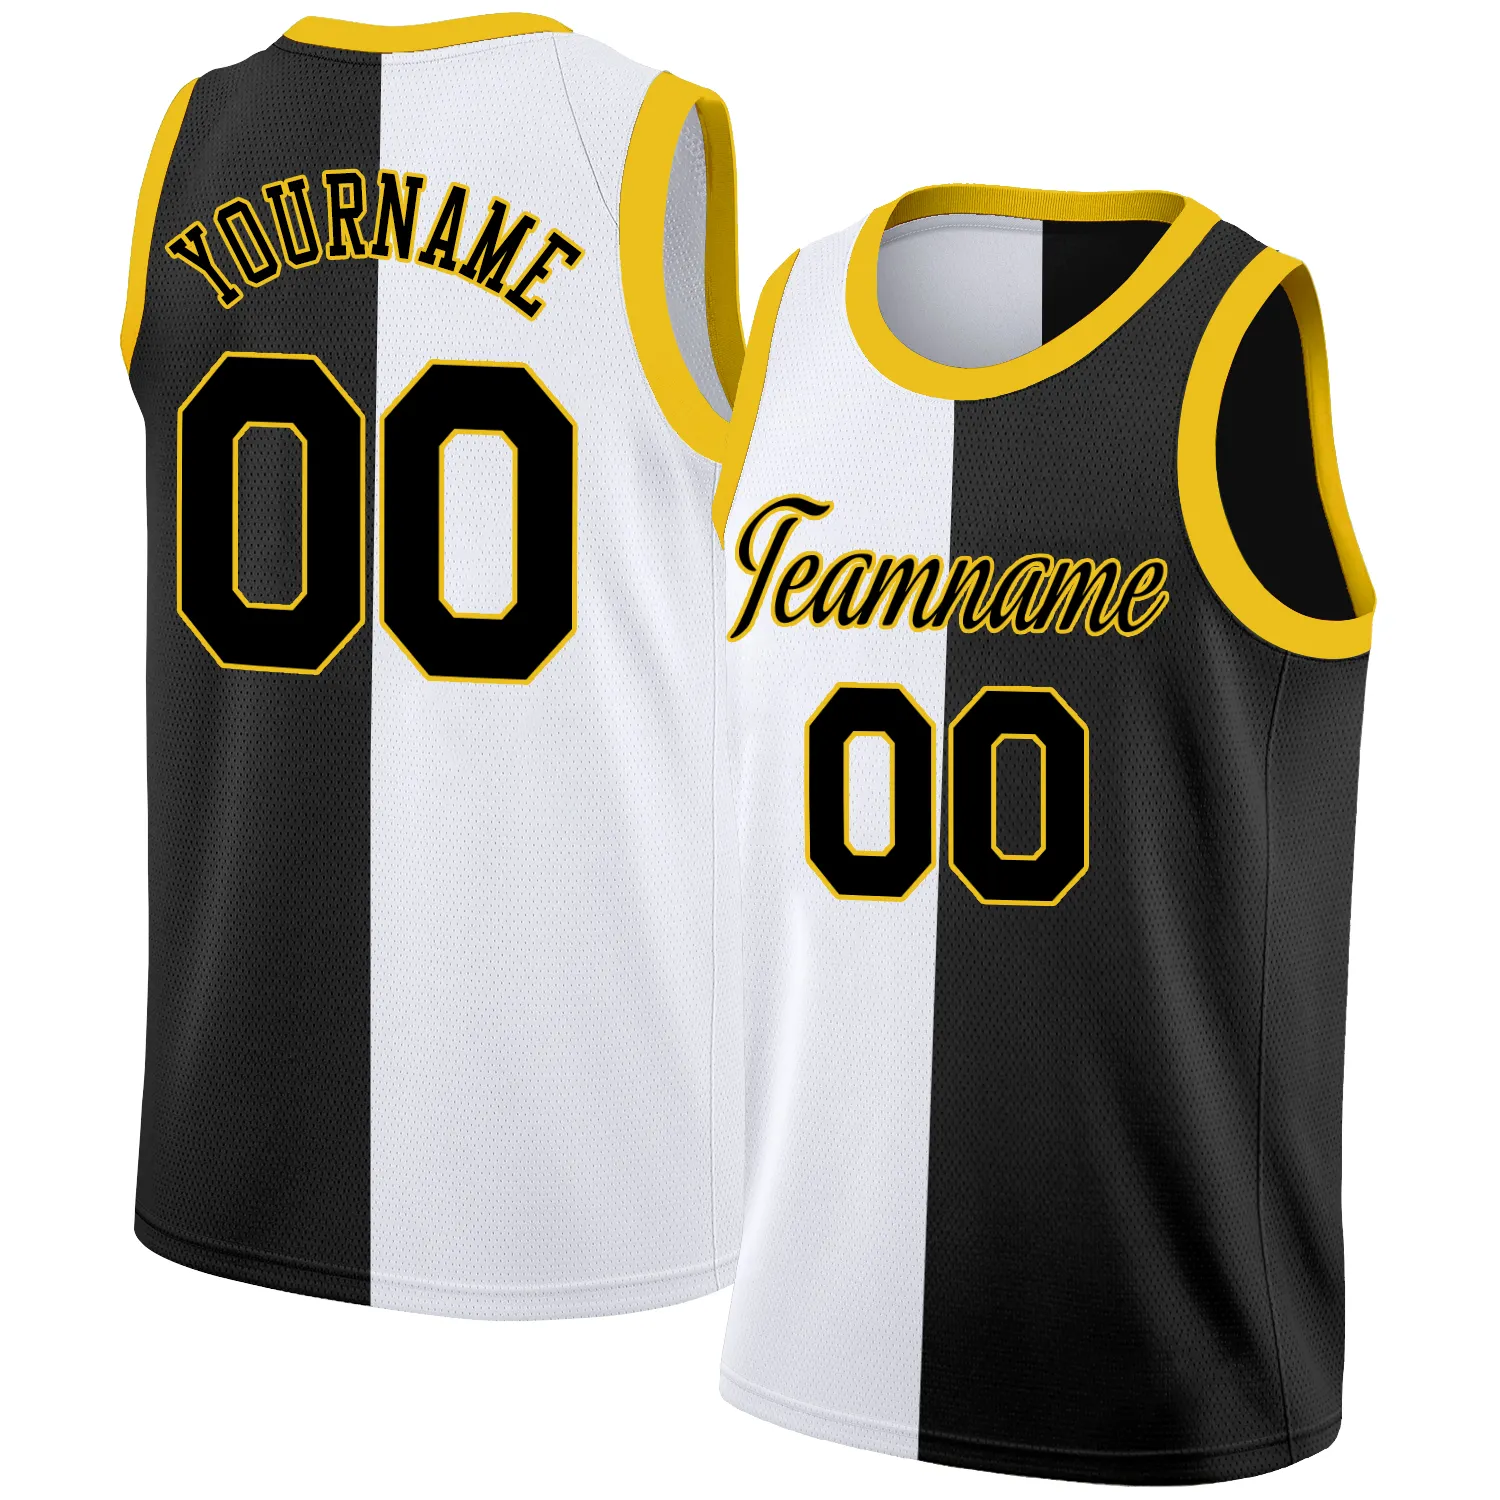 カスタムの新しいデザインのバスケットボールシャツ高品質のバスケットボールセット無料印刷刺繍ステッチバスケットボールジャージ